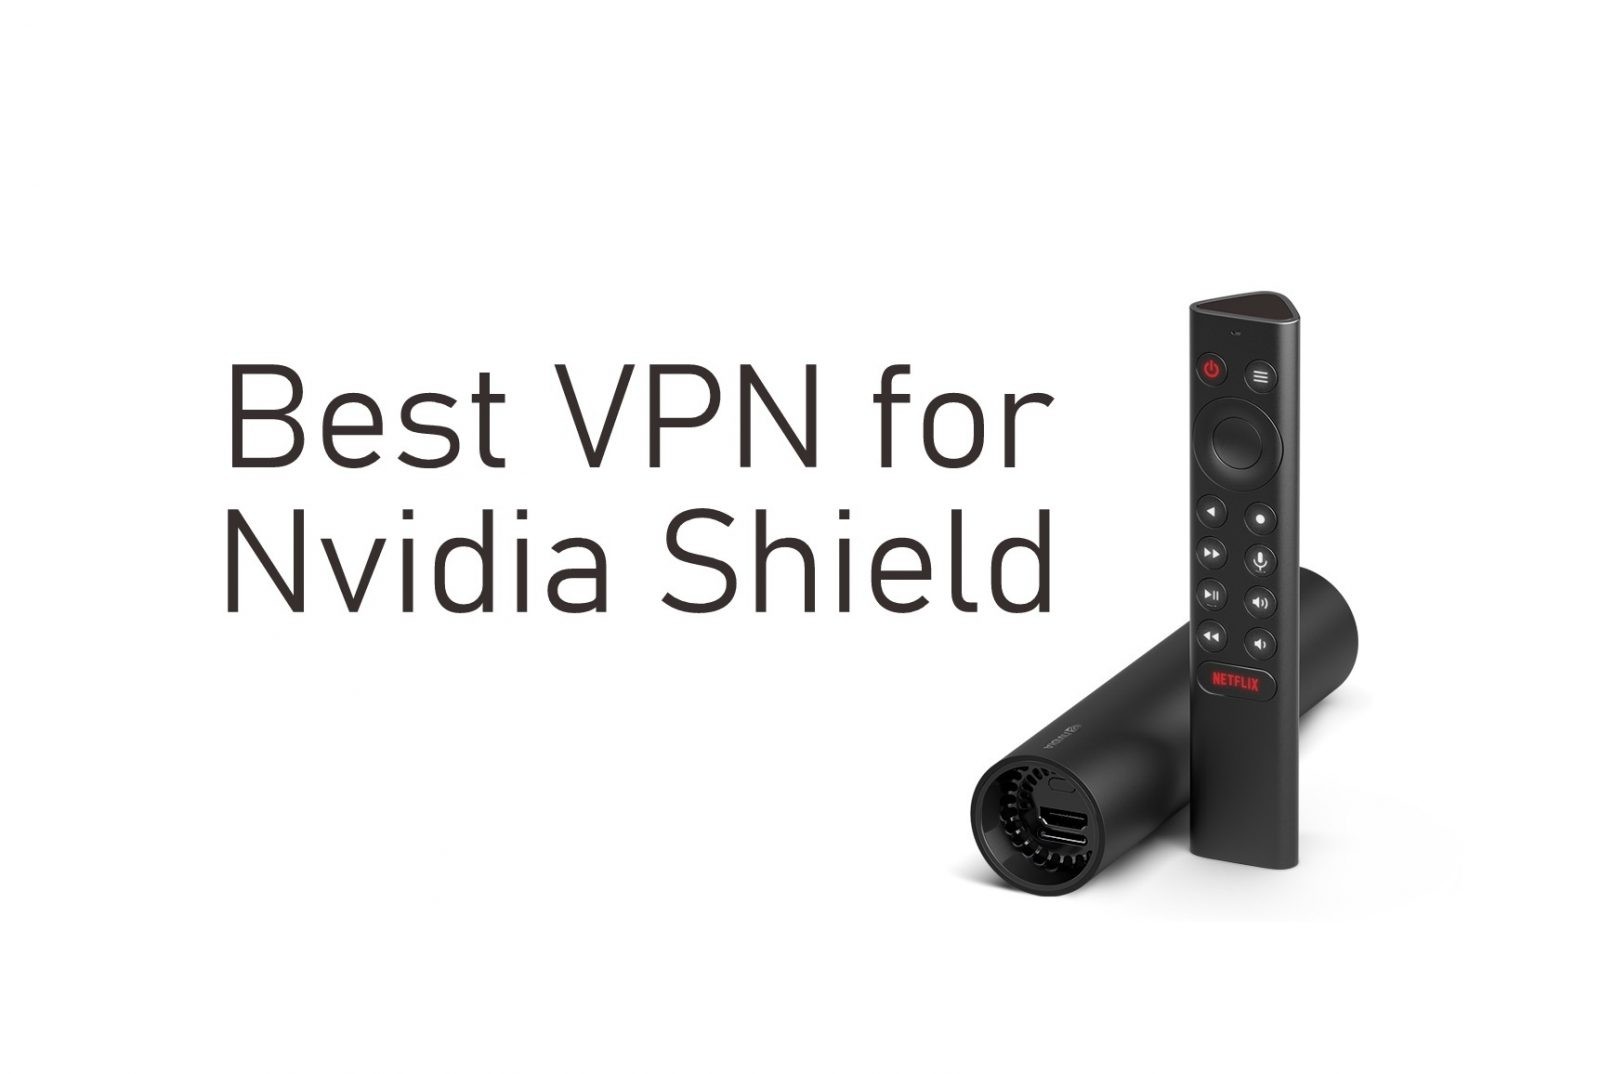 VPN for Nvidia Shield